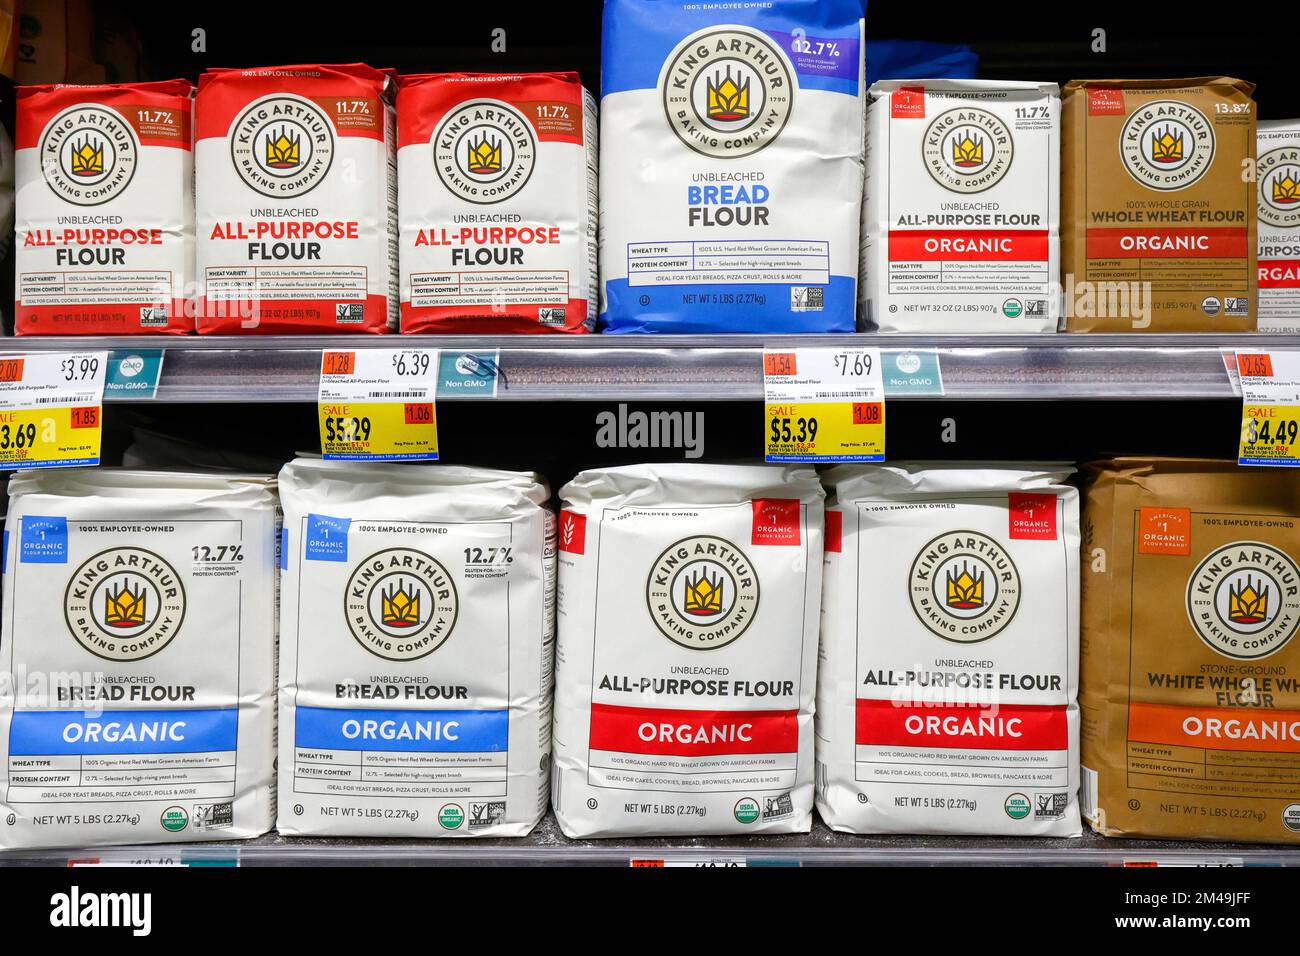 Harina orgánica King Arthur Baking Company en un estante de supermercado. Foto de stock